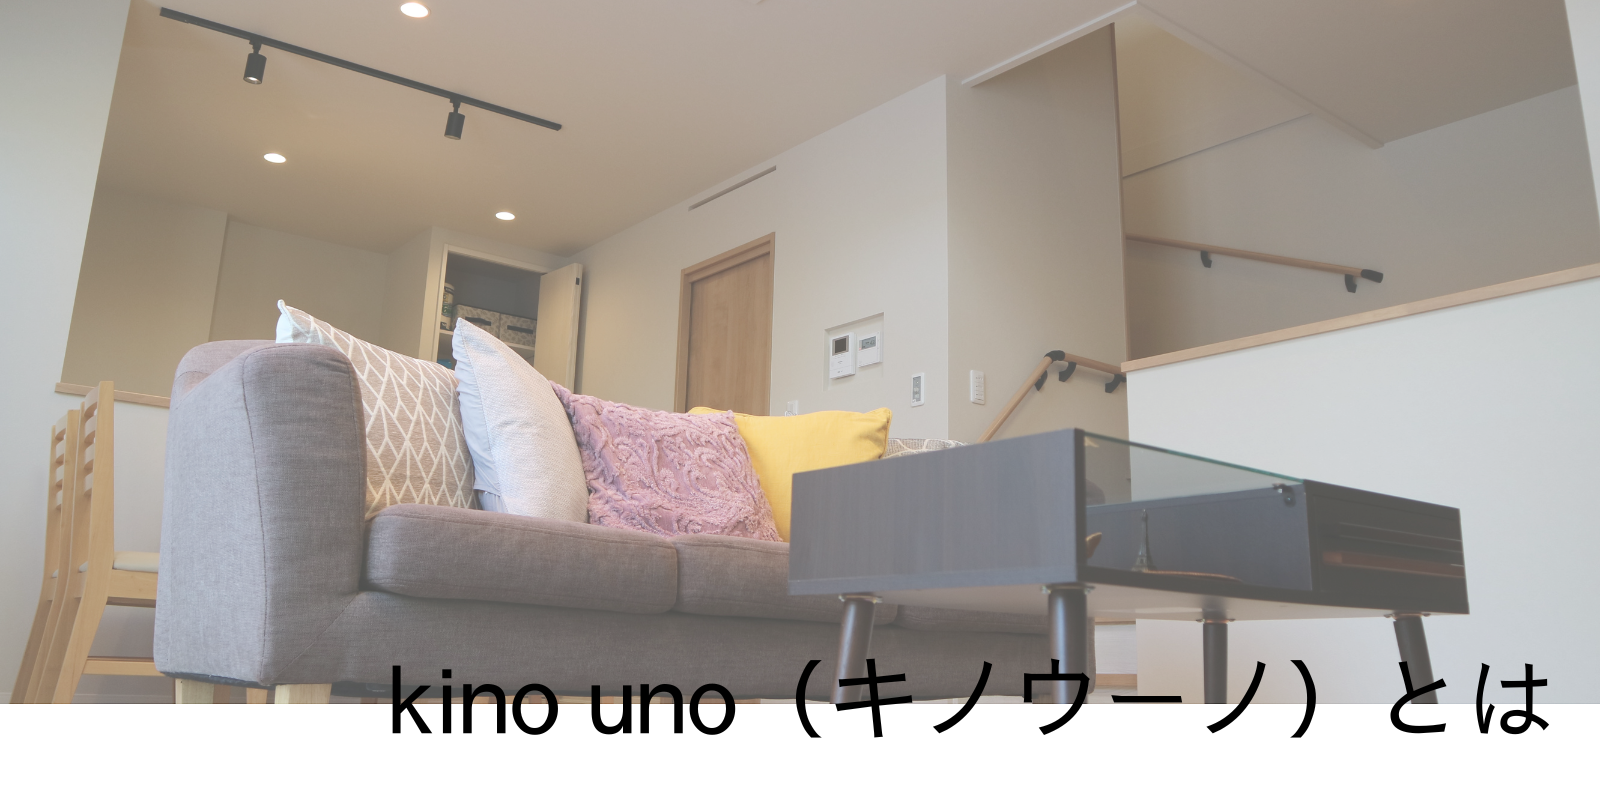 kino uno（キノウーノ）とは.png